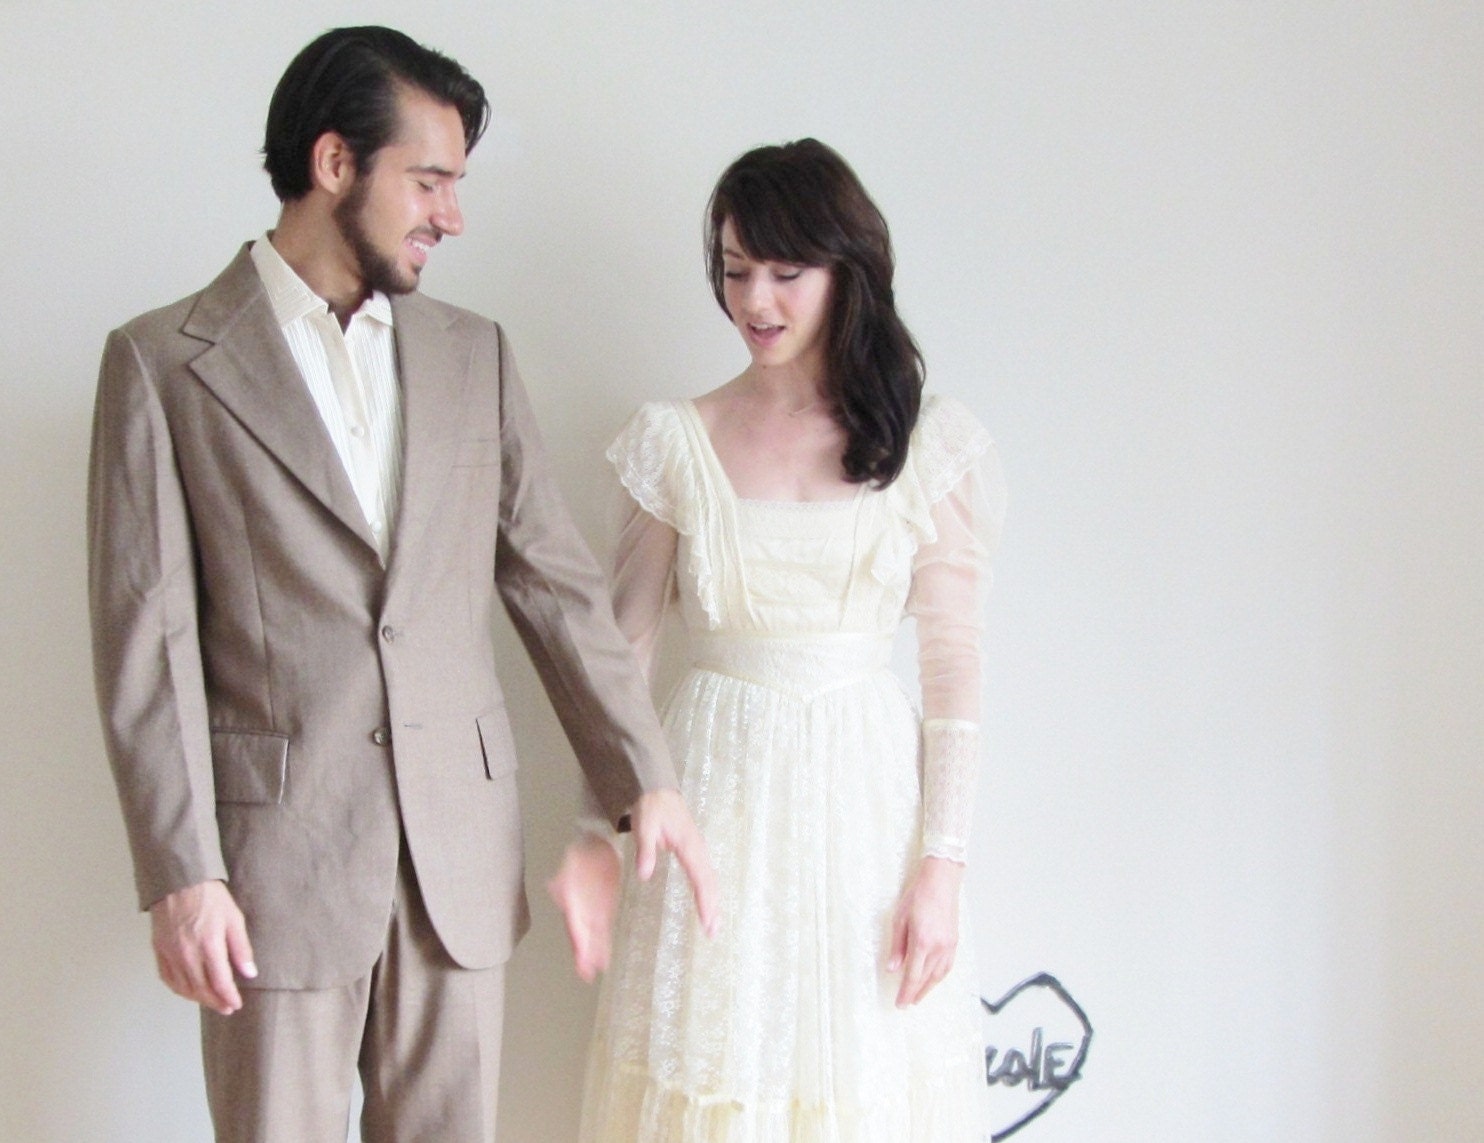 gunne sax prairie wedding dress . ivory boho lace .extra small.xs.xxs .sale - DOTTO